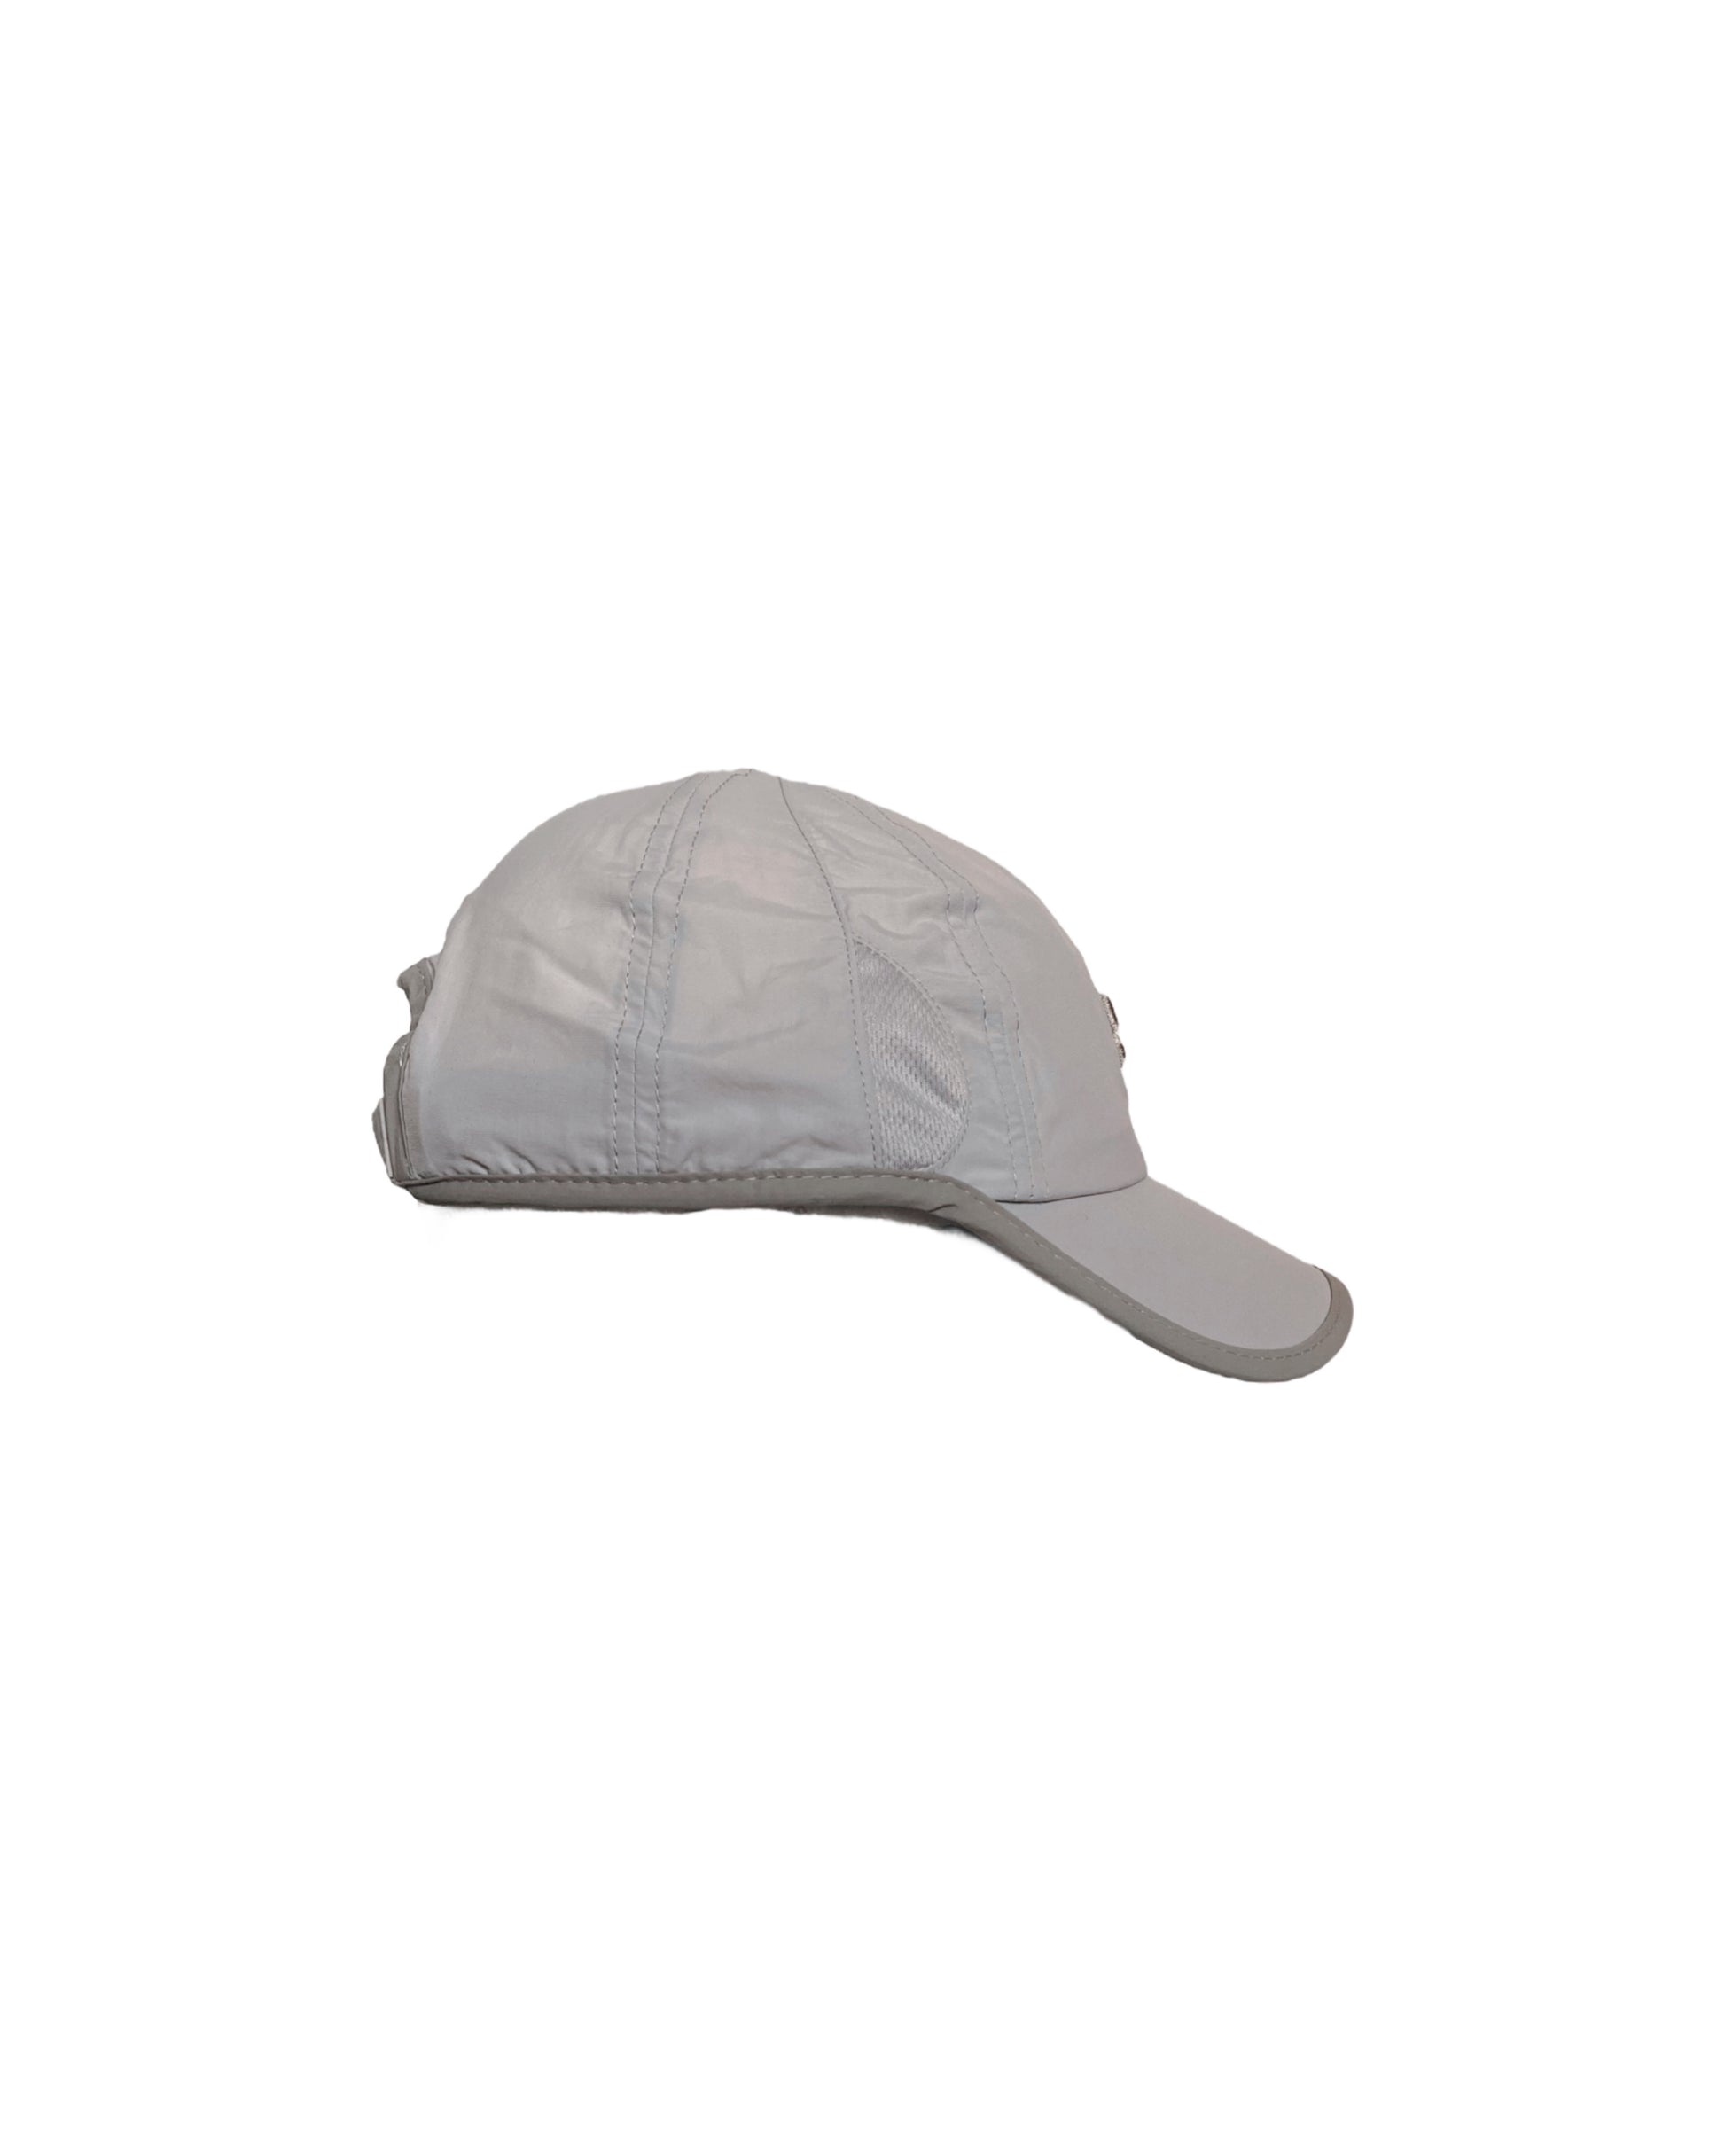 O2 Hat (Gray) - ANGEL ARCADE